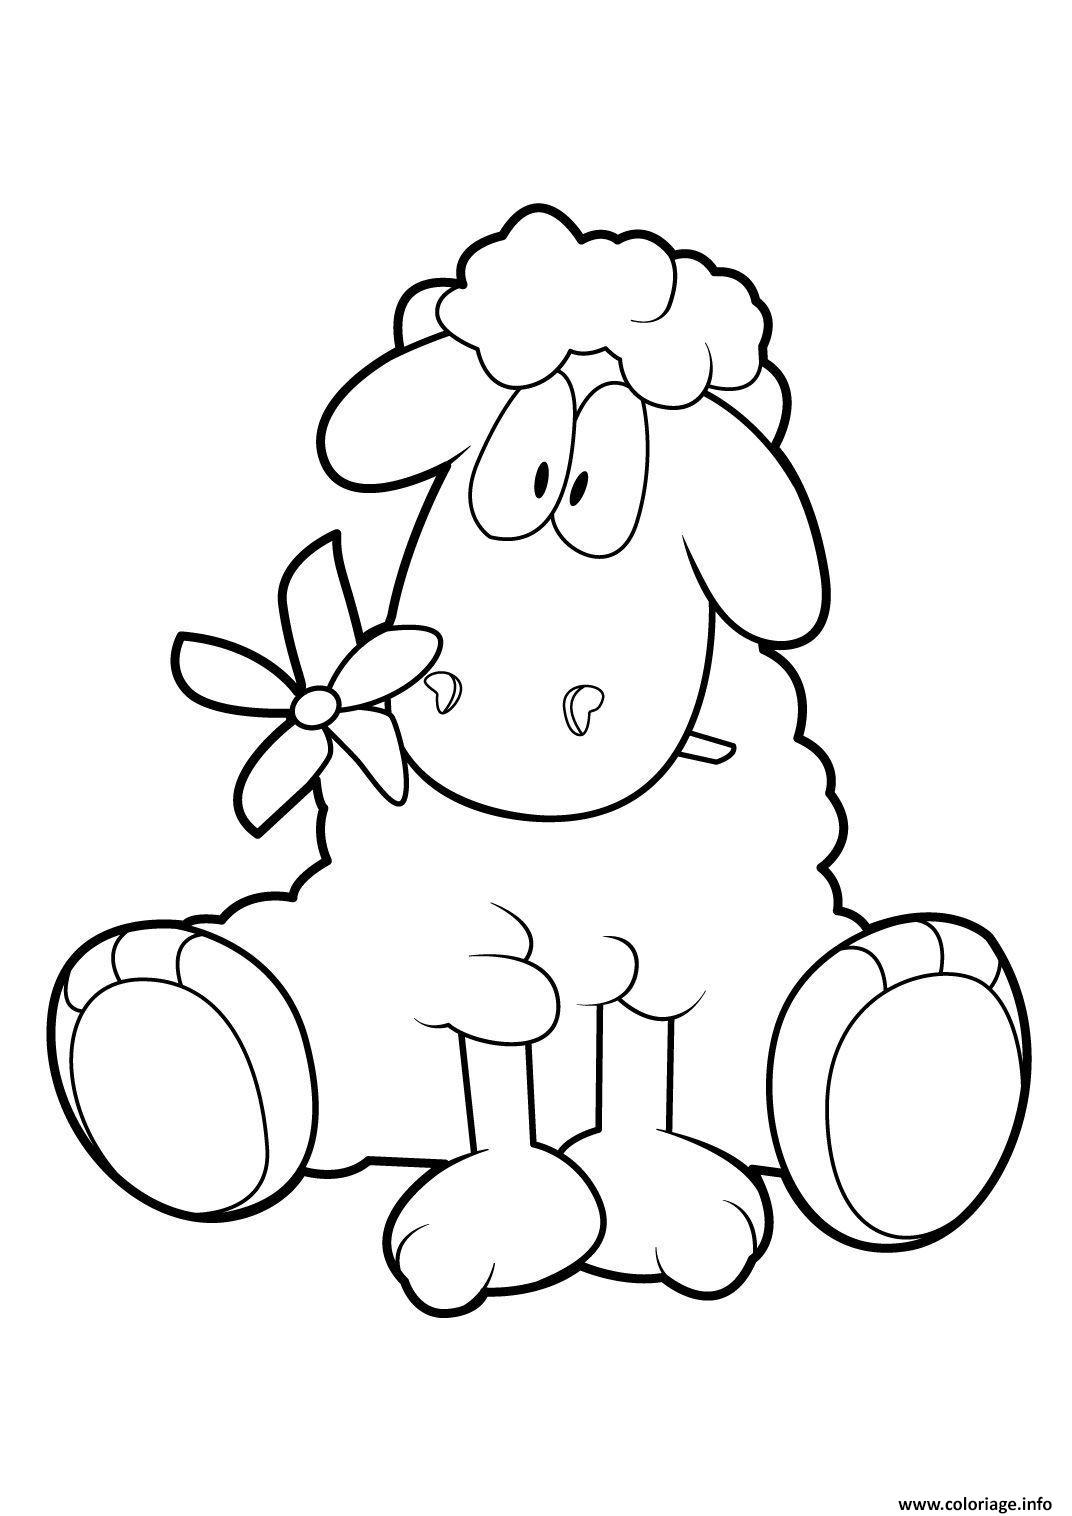 Coloriage Mouton 18 Dessin Gulli À Imprimer encequiconcerne Mouton A Colorier